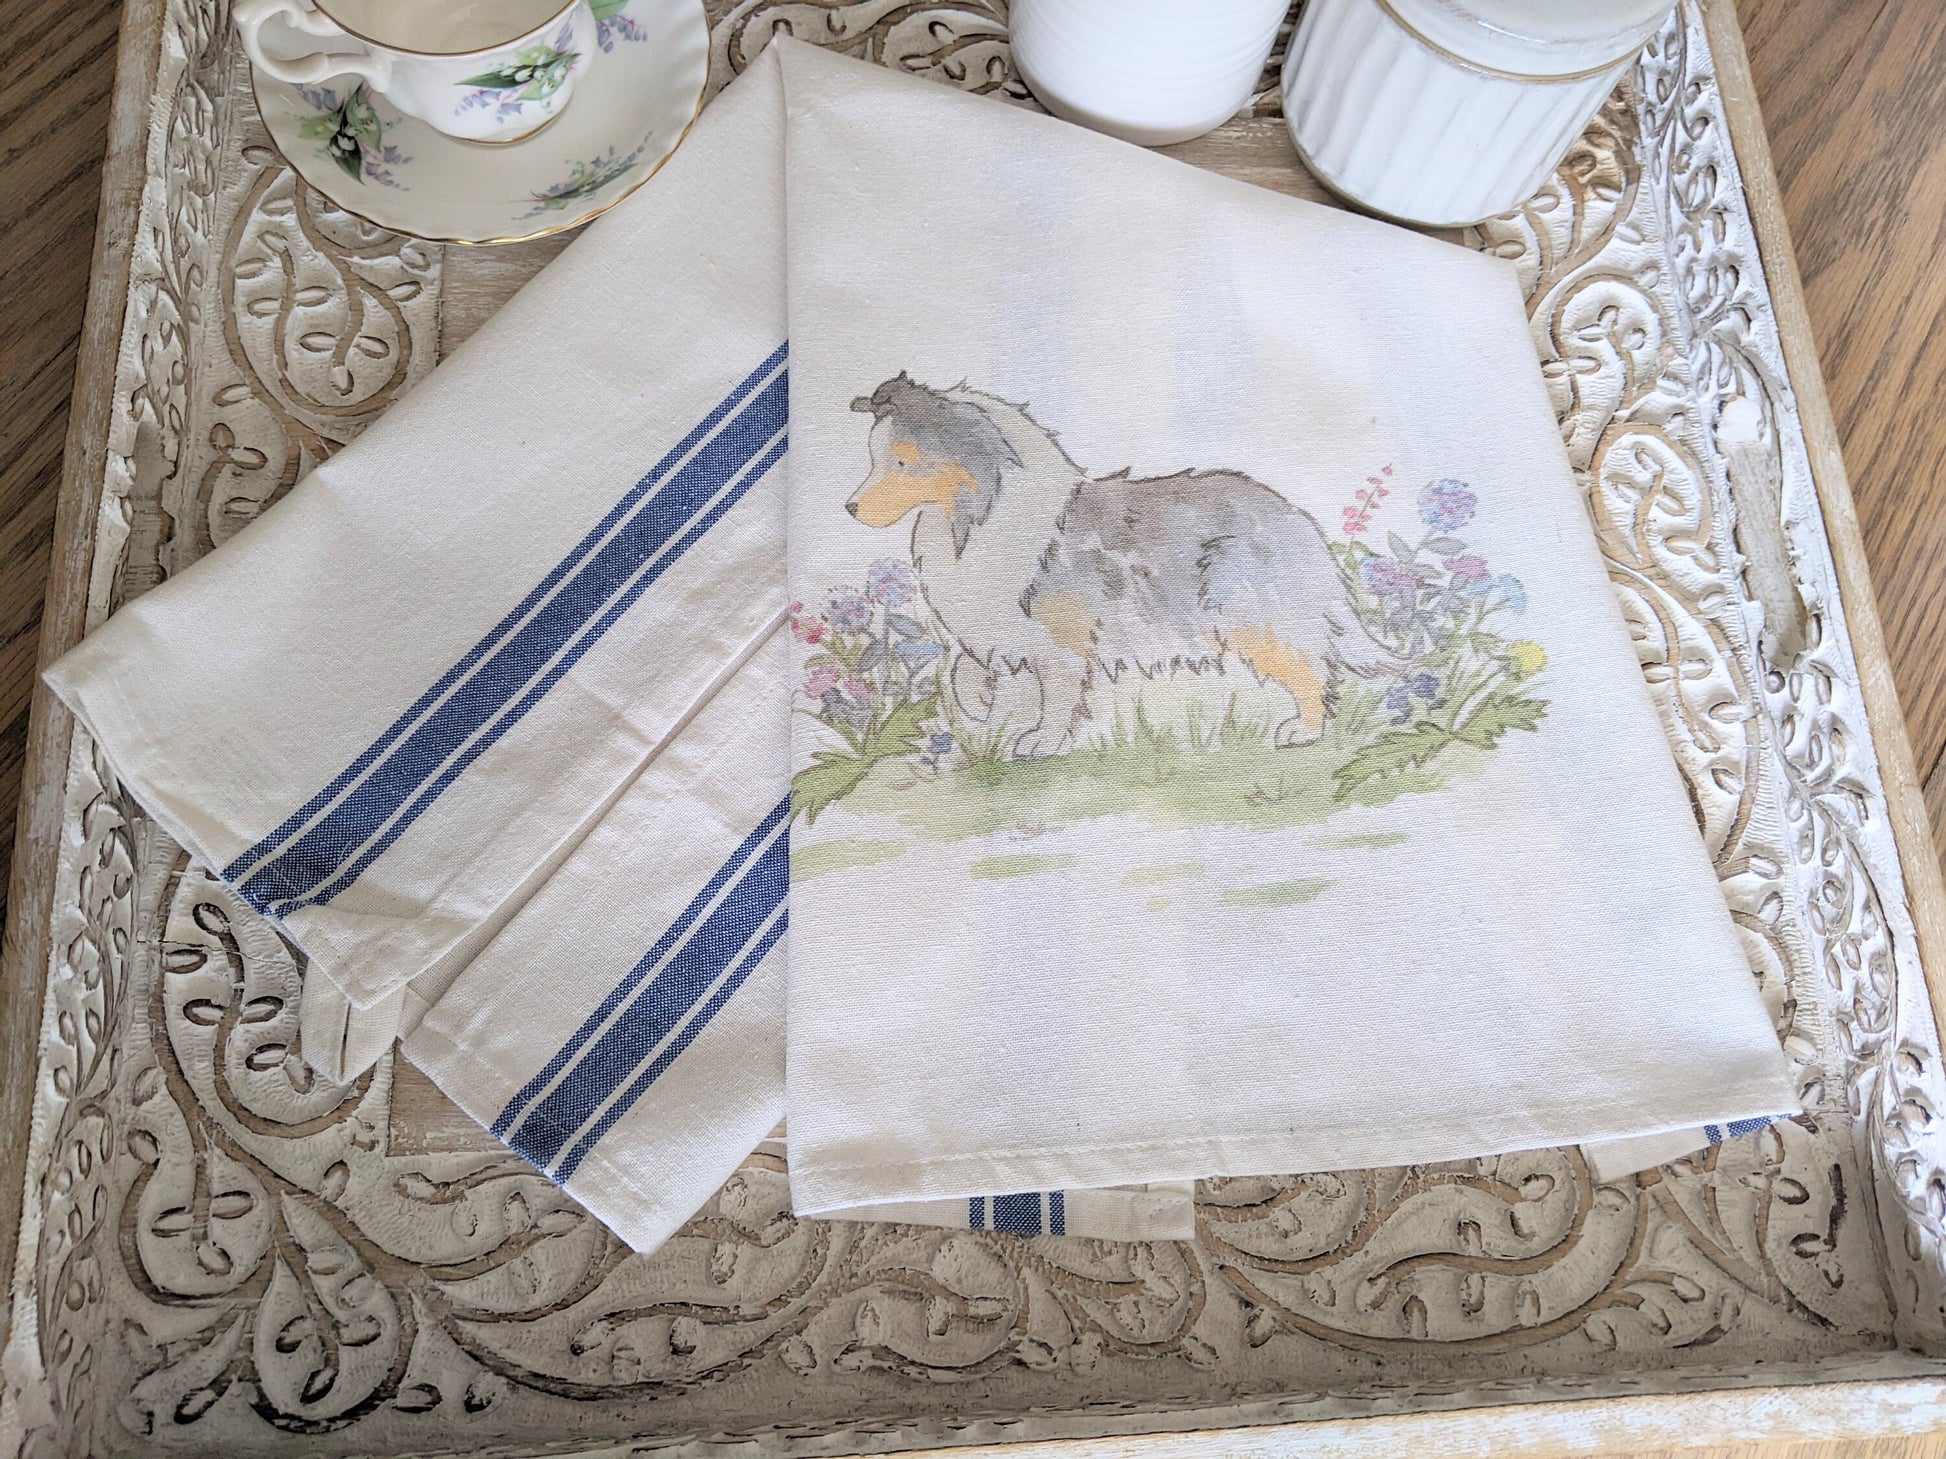 Shetland Sheepdog Tea Towel, Farmhouse Sheltie Towel, Ticking Stripe Towel, Blue Merle Sheltie Towel, Sheltie Gift, Gift for Sheltie Lovers